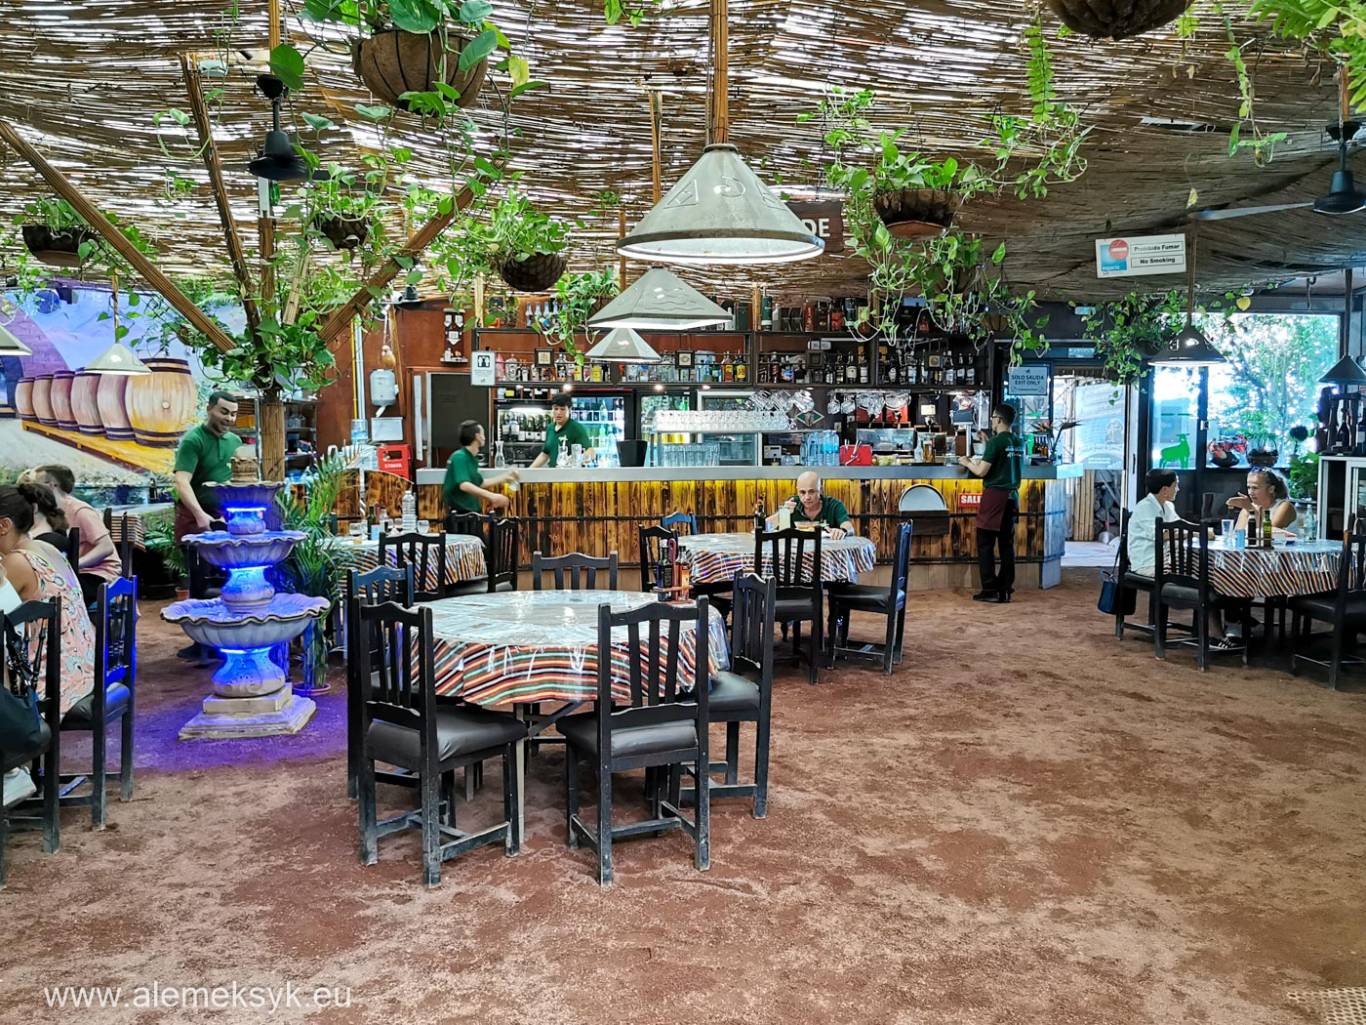 Guachinche El Cordero na Teneryfie - wyjątkowa restauracja na plantacji bananów